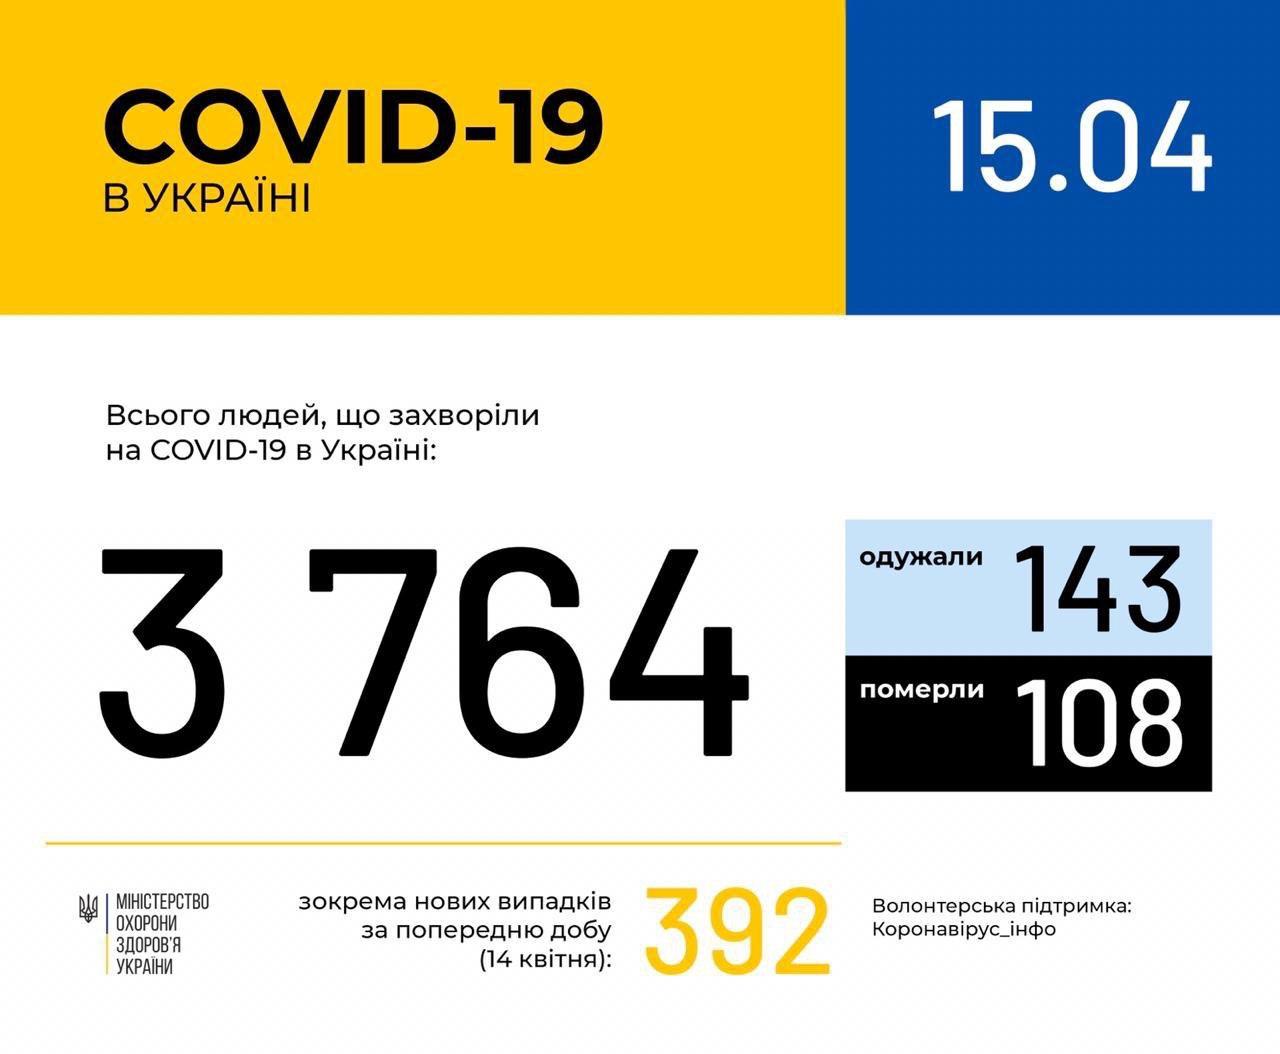 В Україні зафіксовано 3764 випадки коронавірусної хвороби COVID-19, - МОЗ